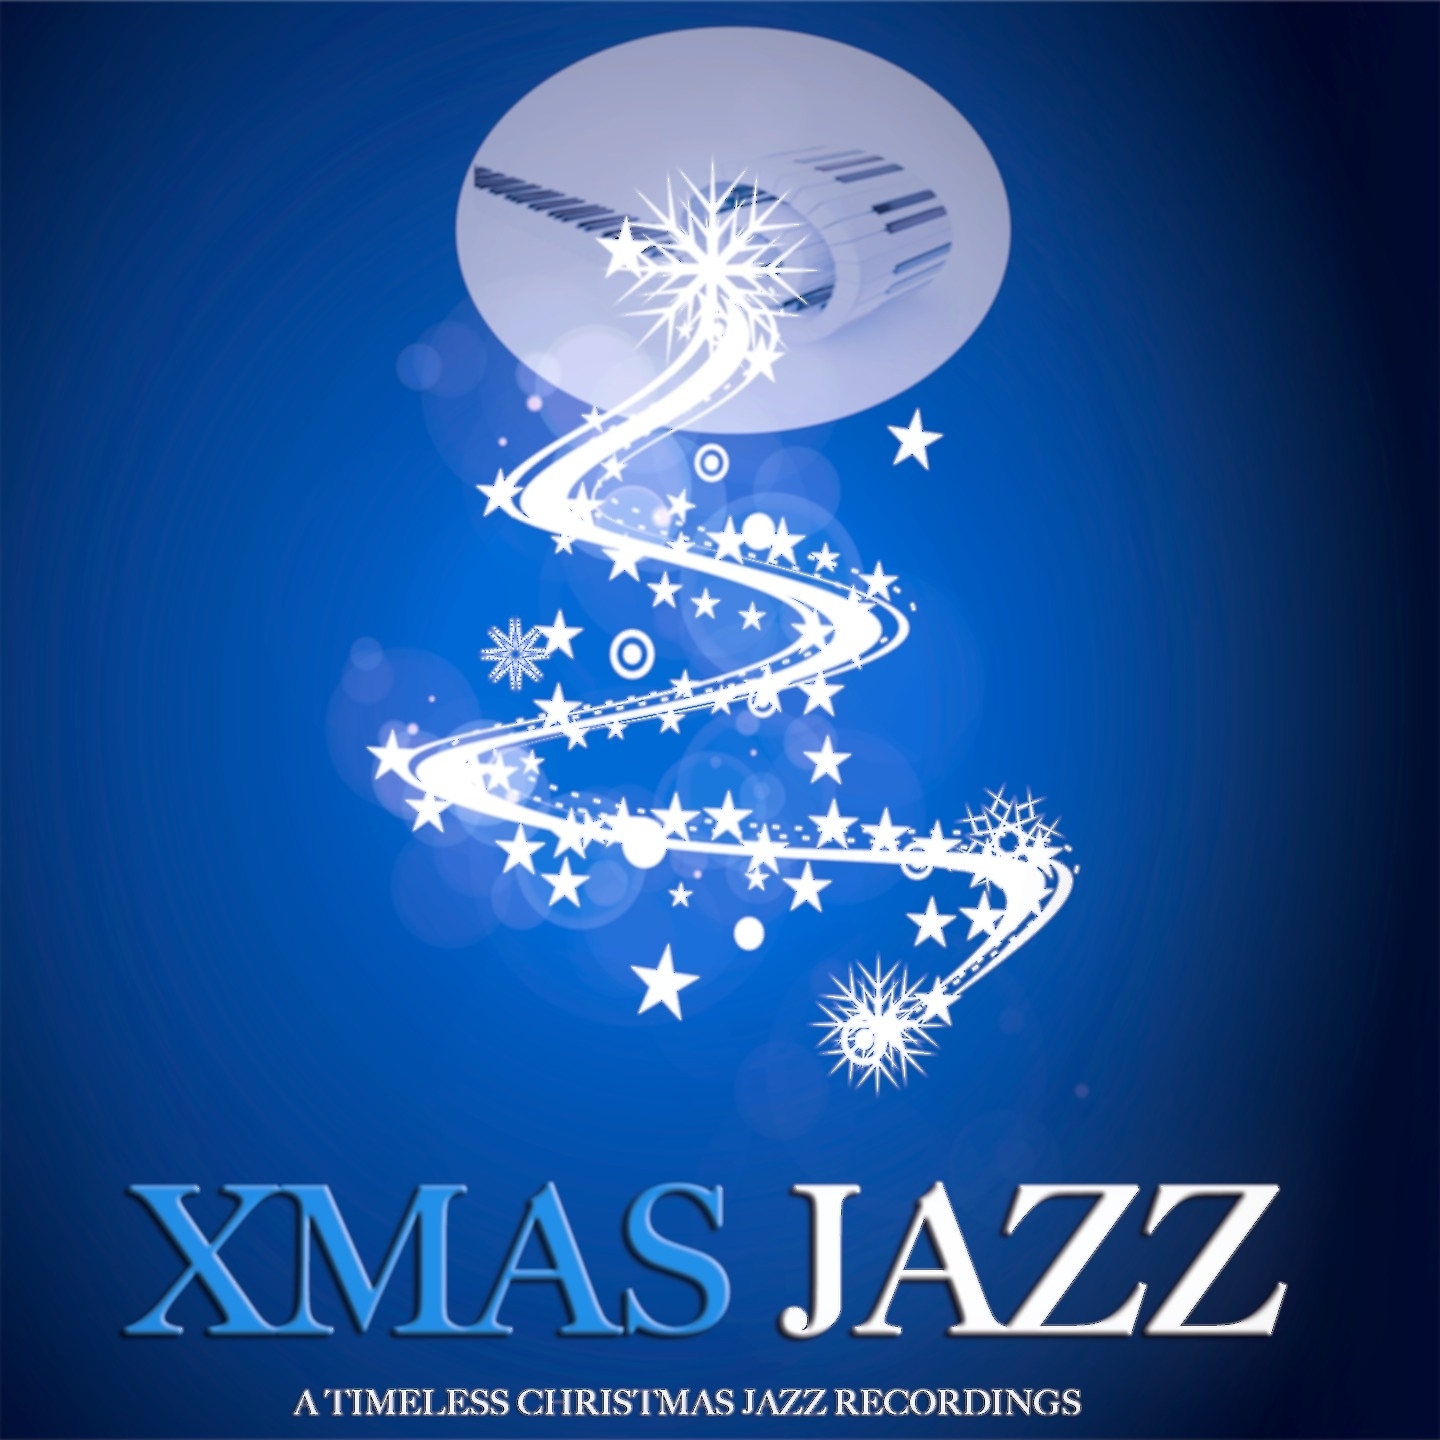 Xmas Jazz (A Timeless Christmas Jazz Recordings)